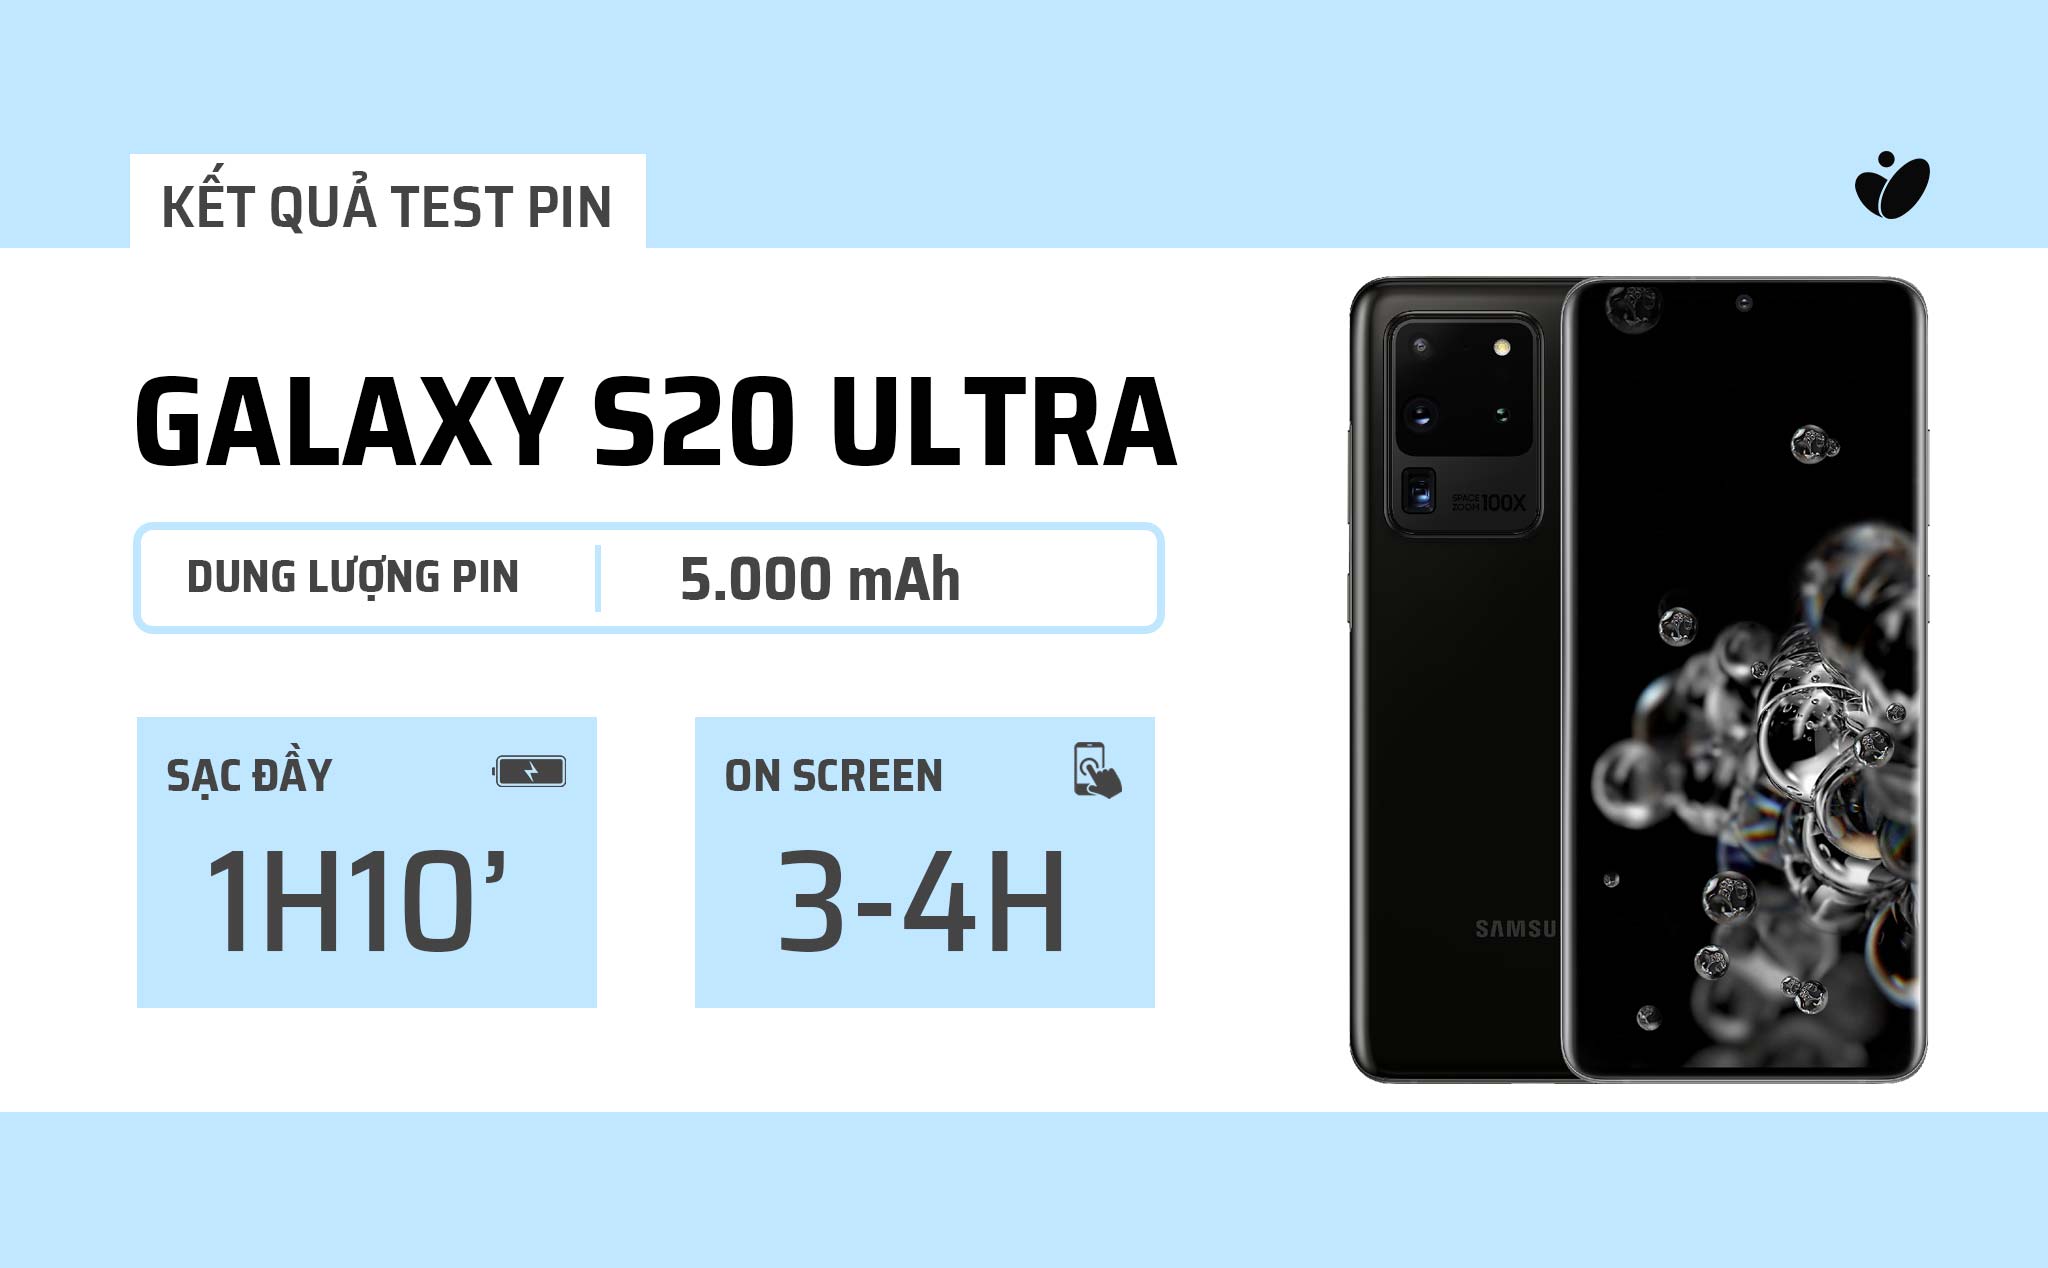 Người dùng đánh giá pin Galaxy S20 Ultra: chỉ on screen được 3-4 tiếng